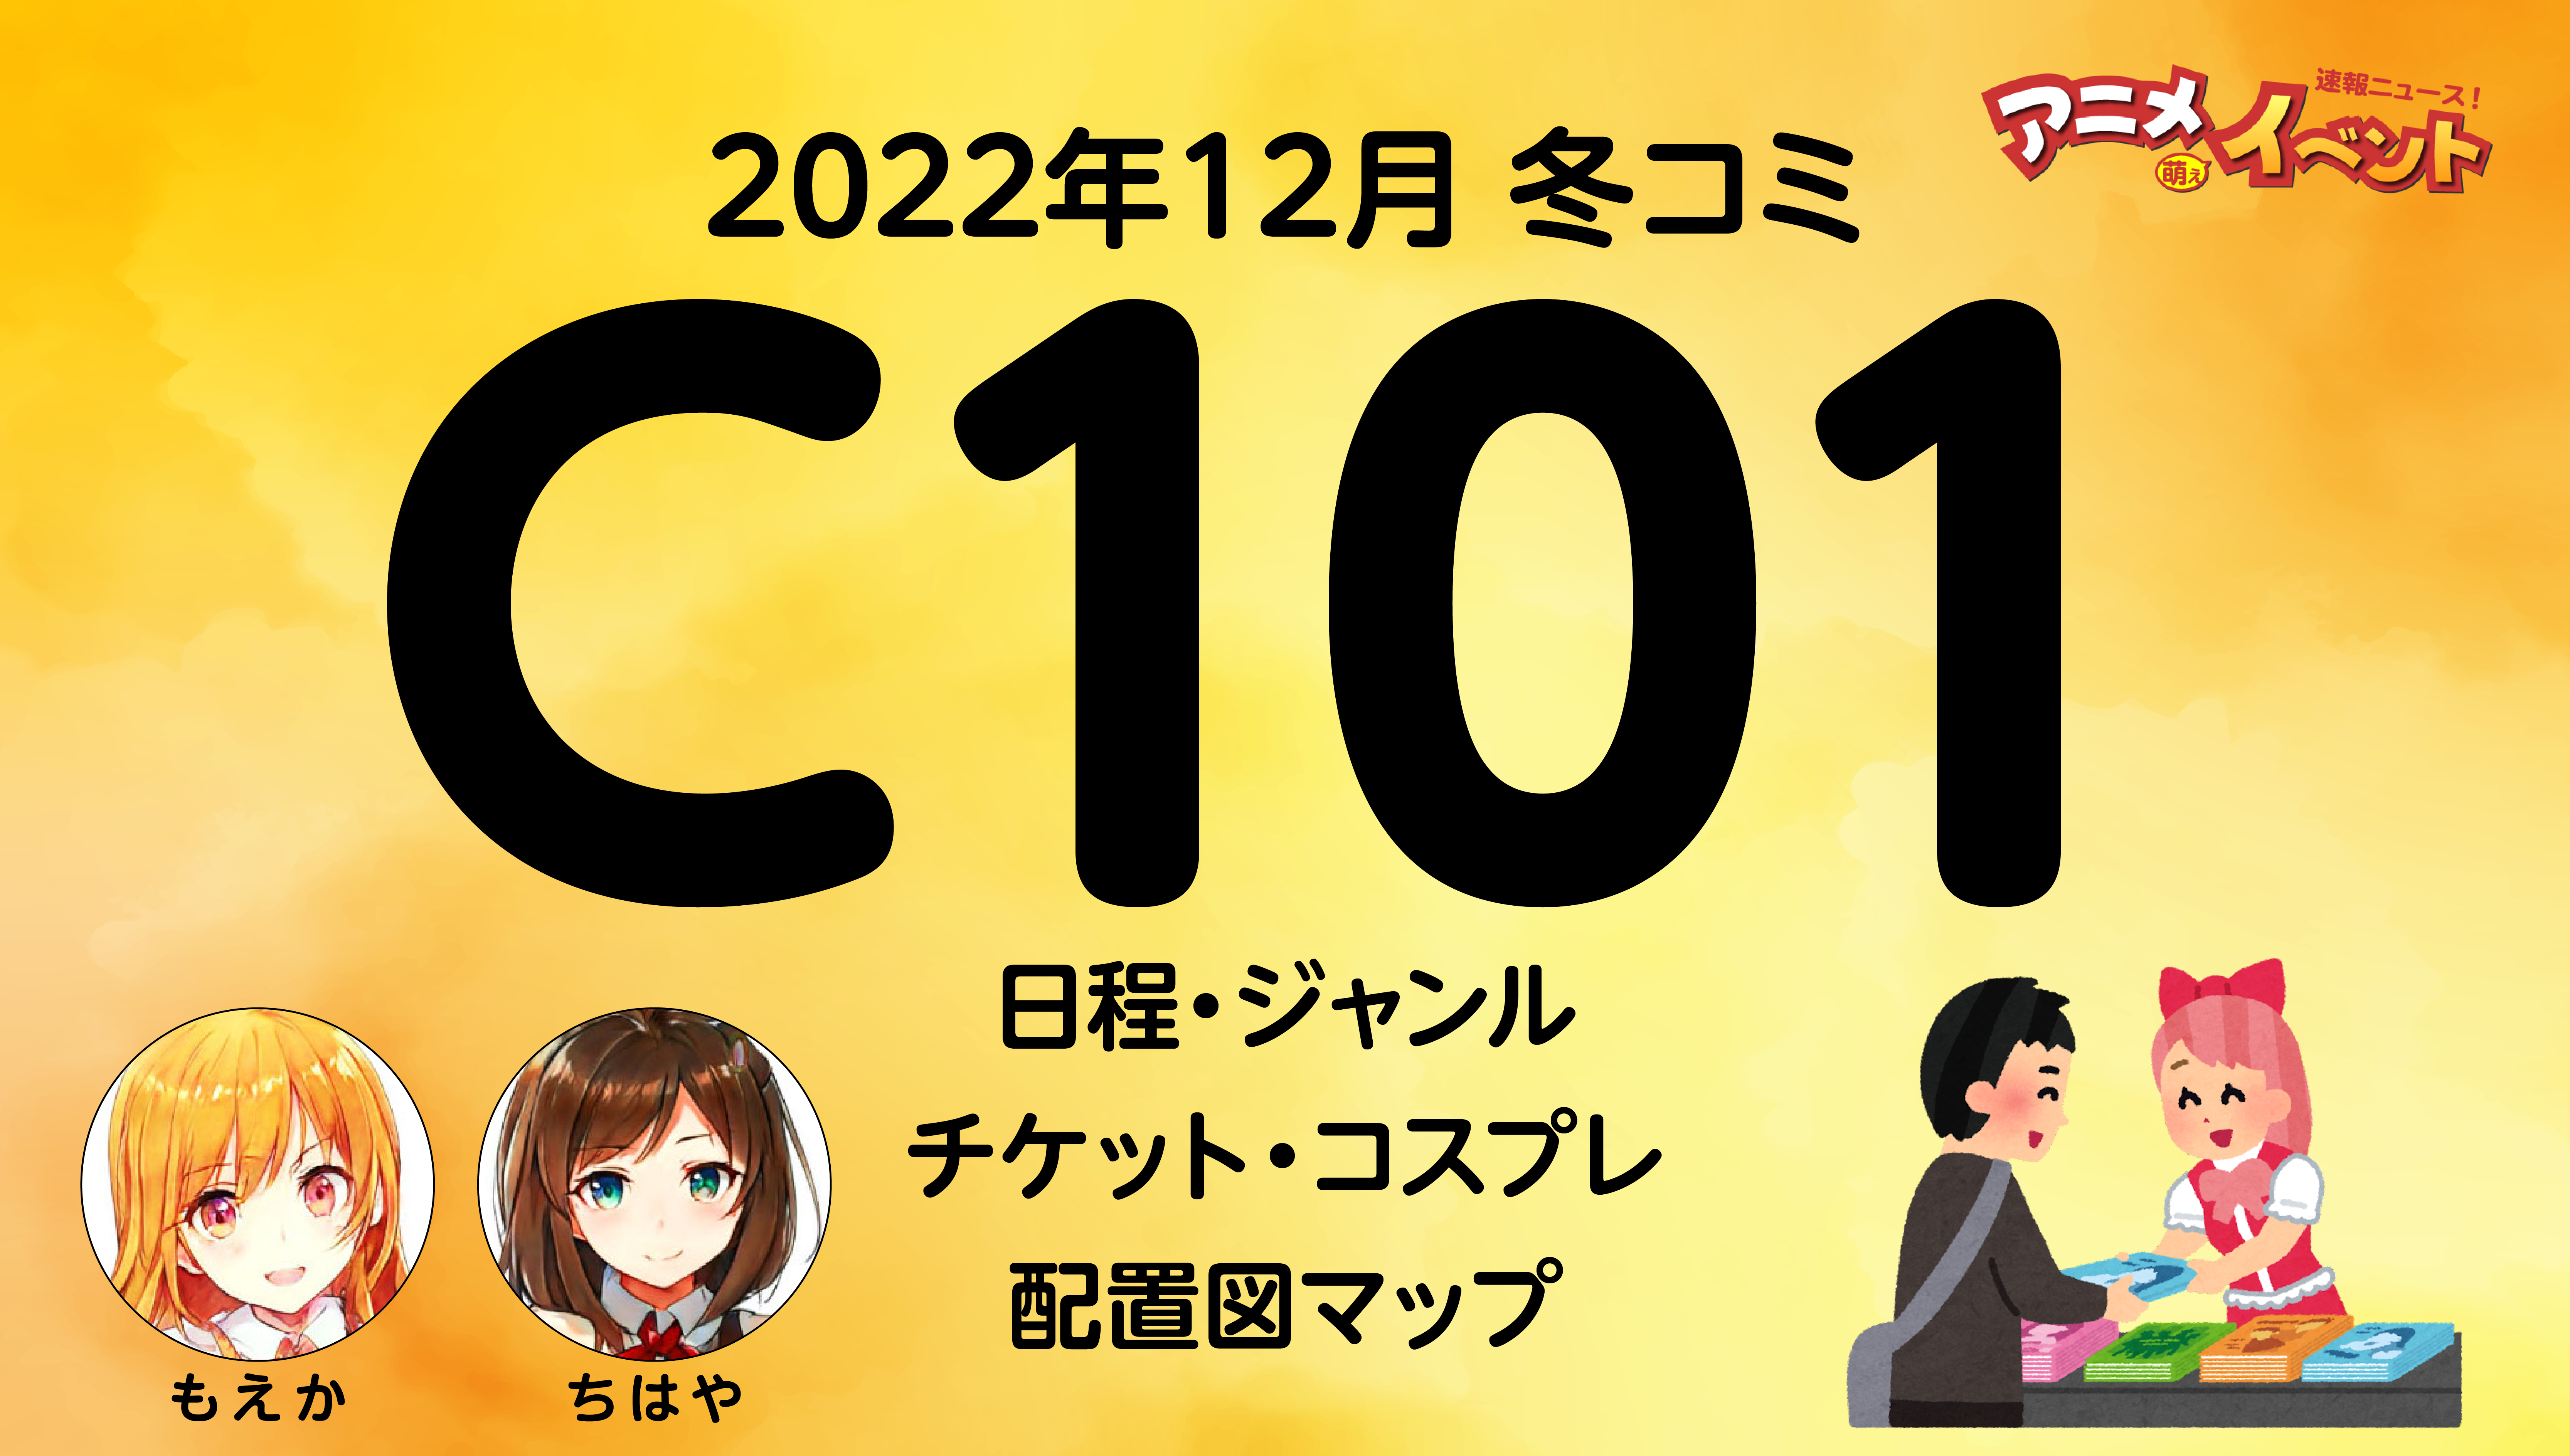 c101 2日目 12/31 コミックマーケット サークルチケット サチケ-